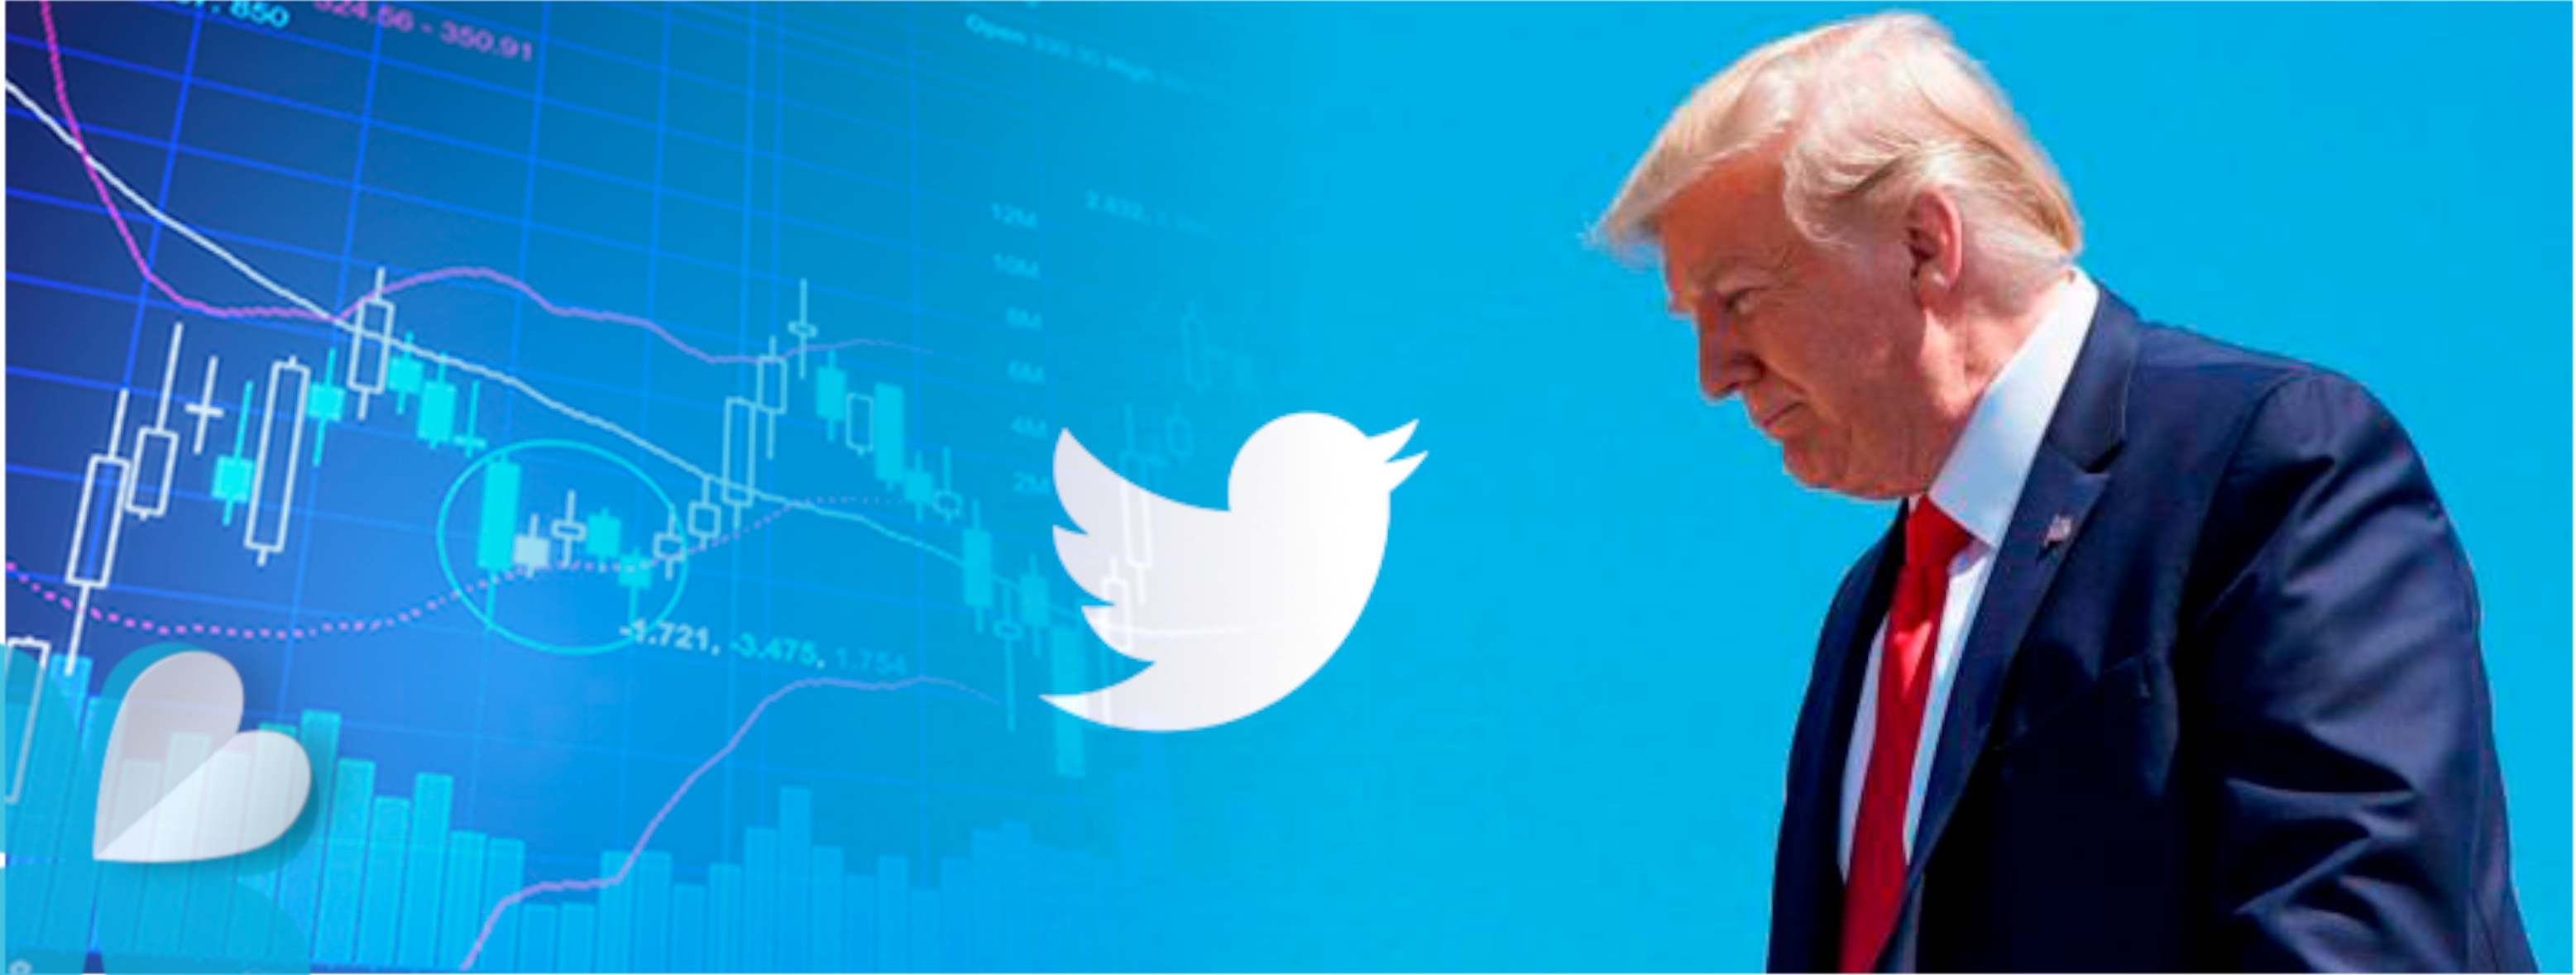 Los twitts de Trump afectan a la bolsa